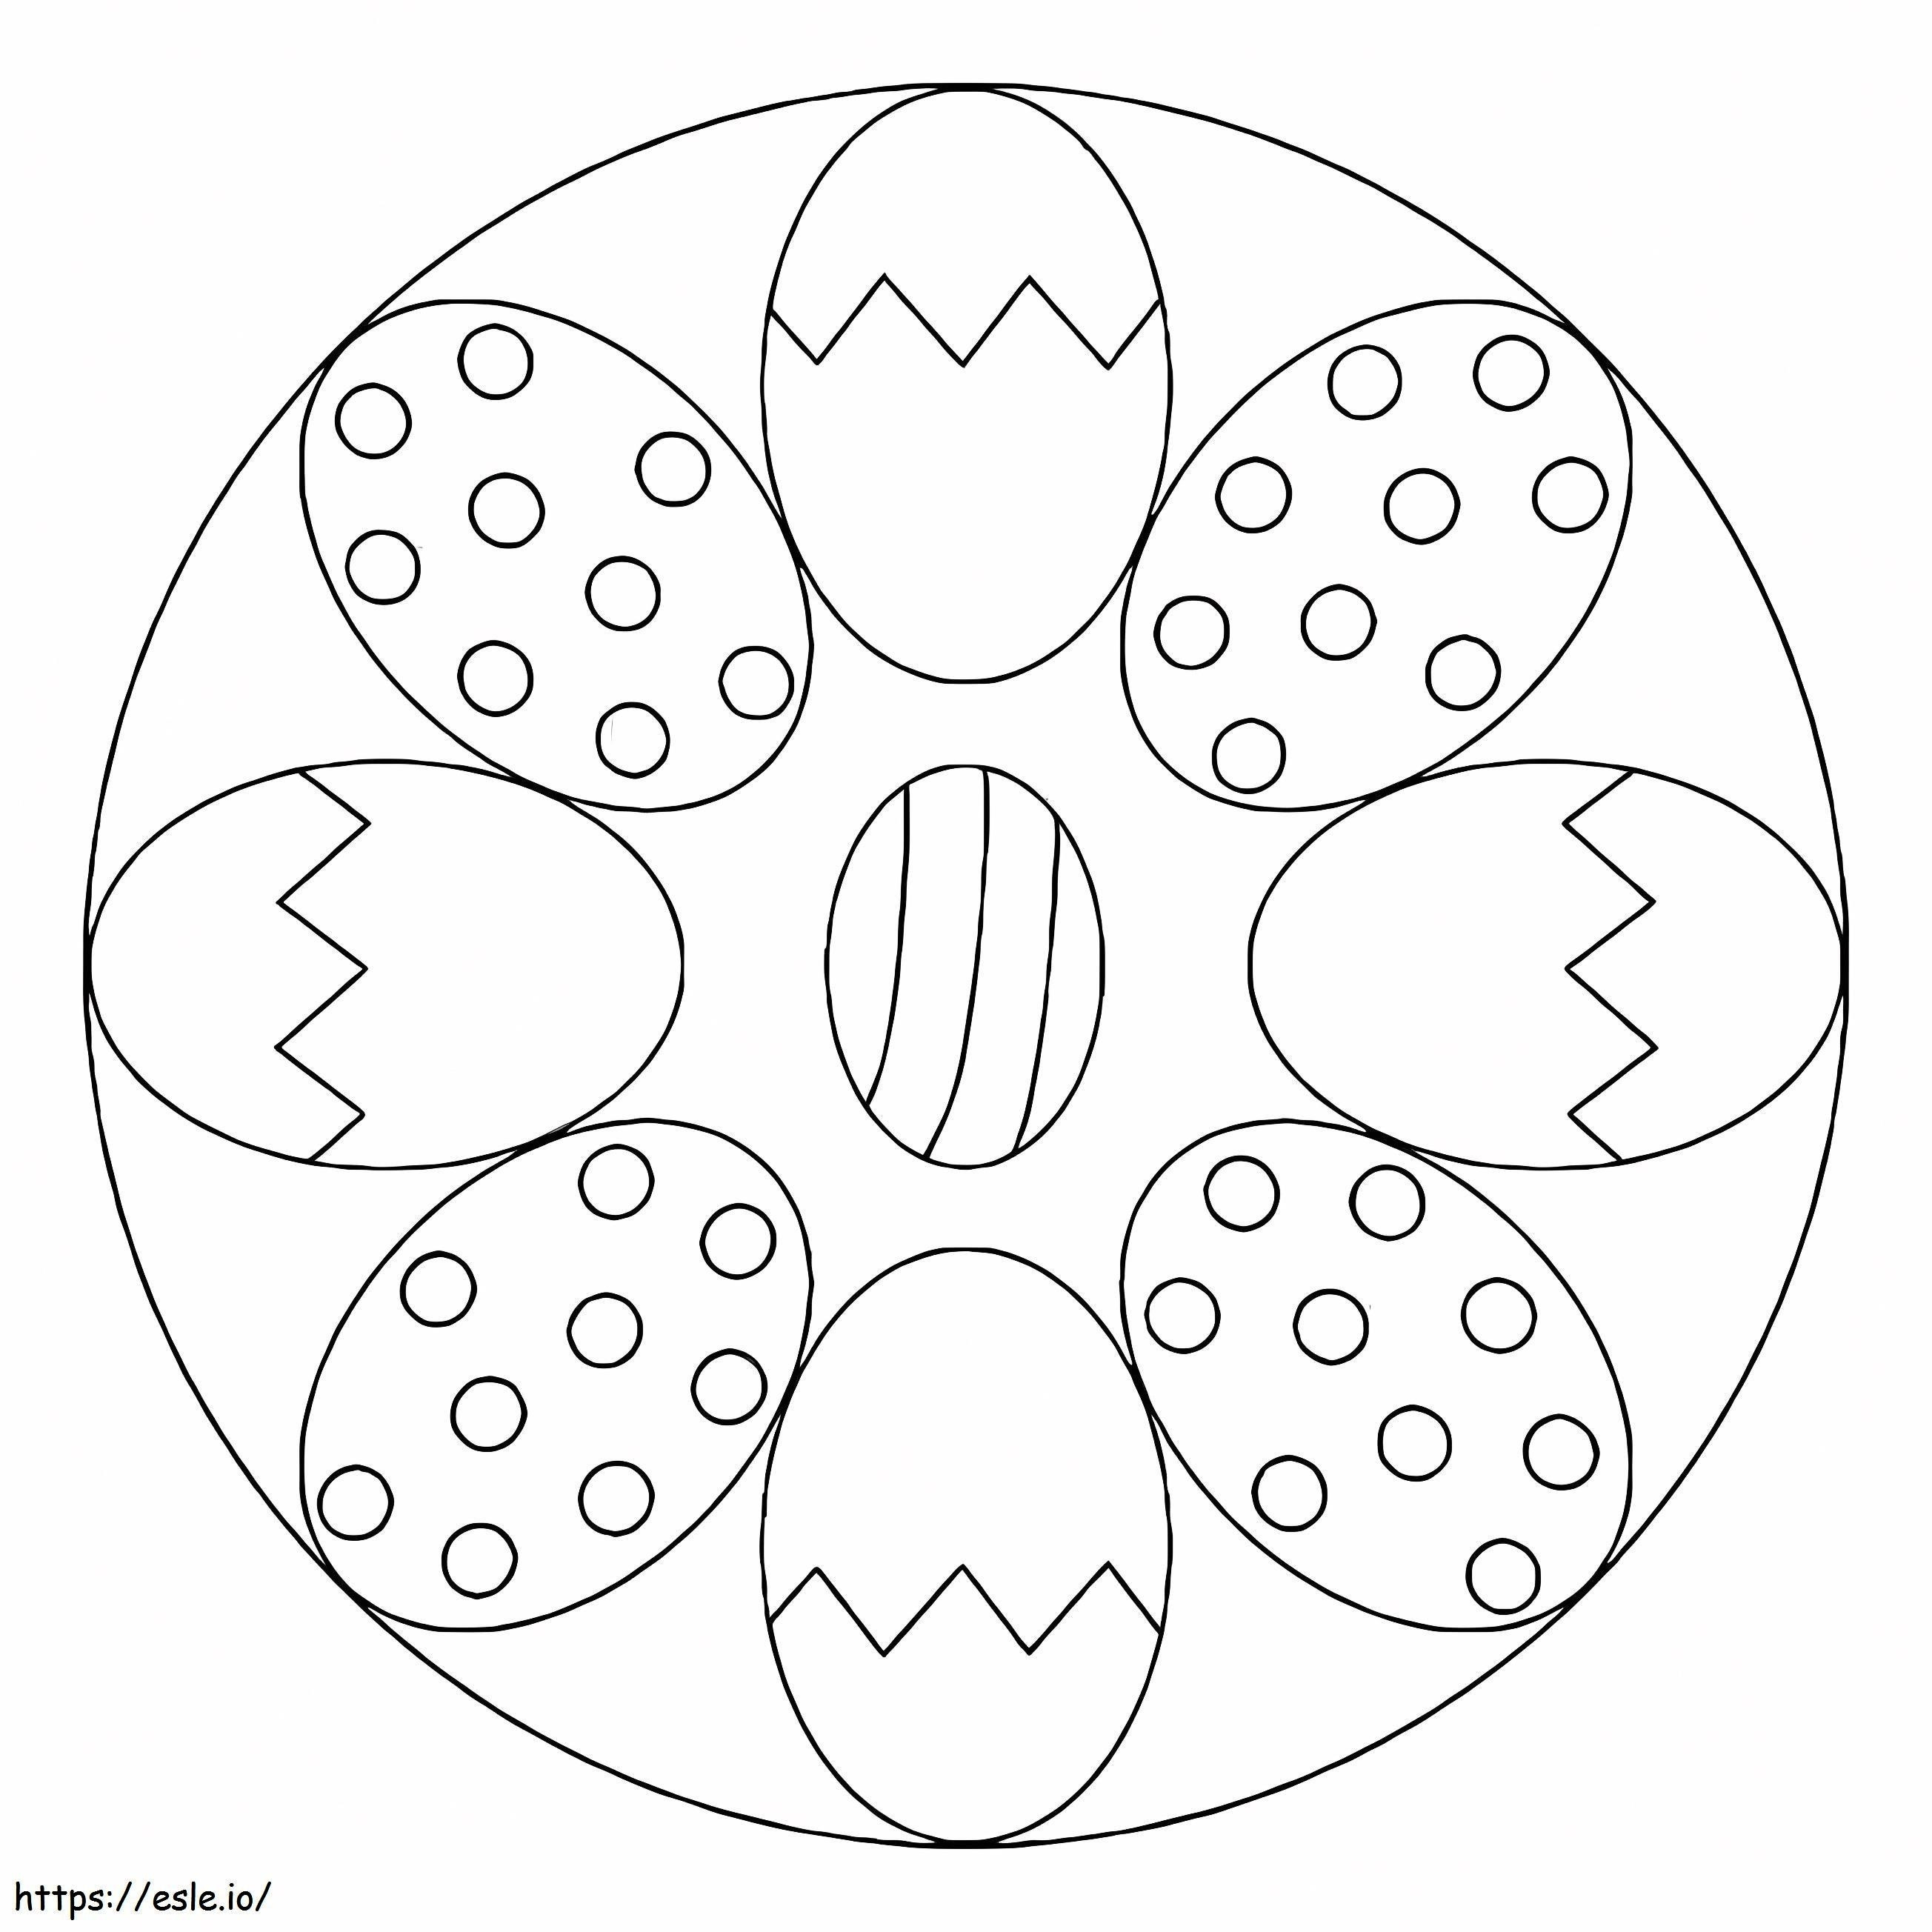 Ostereier-Mandala 1 ausmalbilder